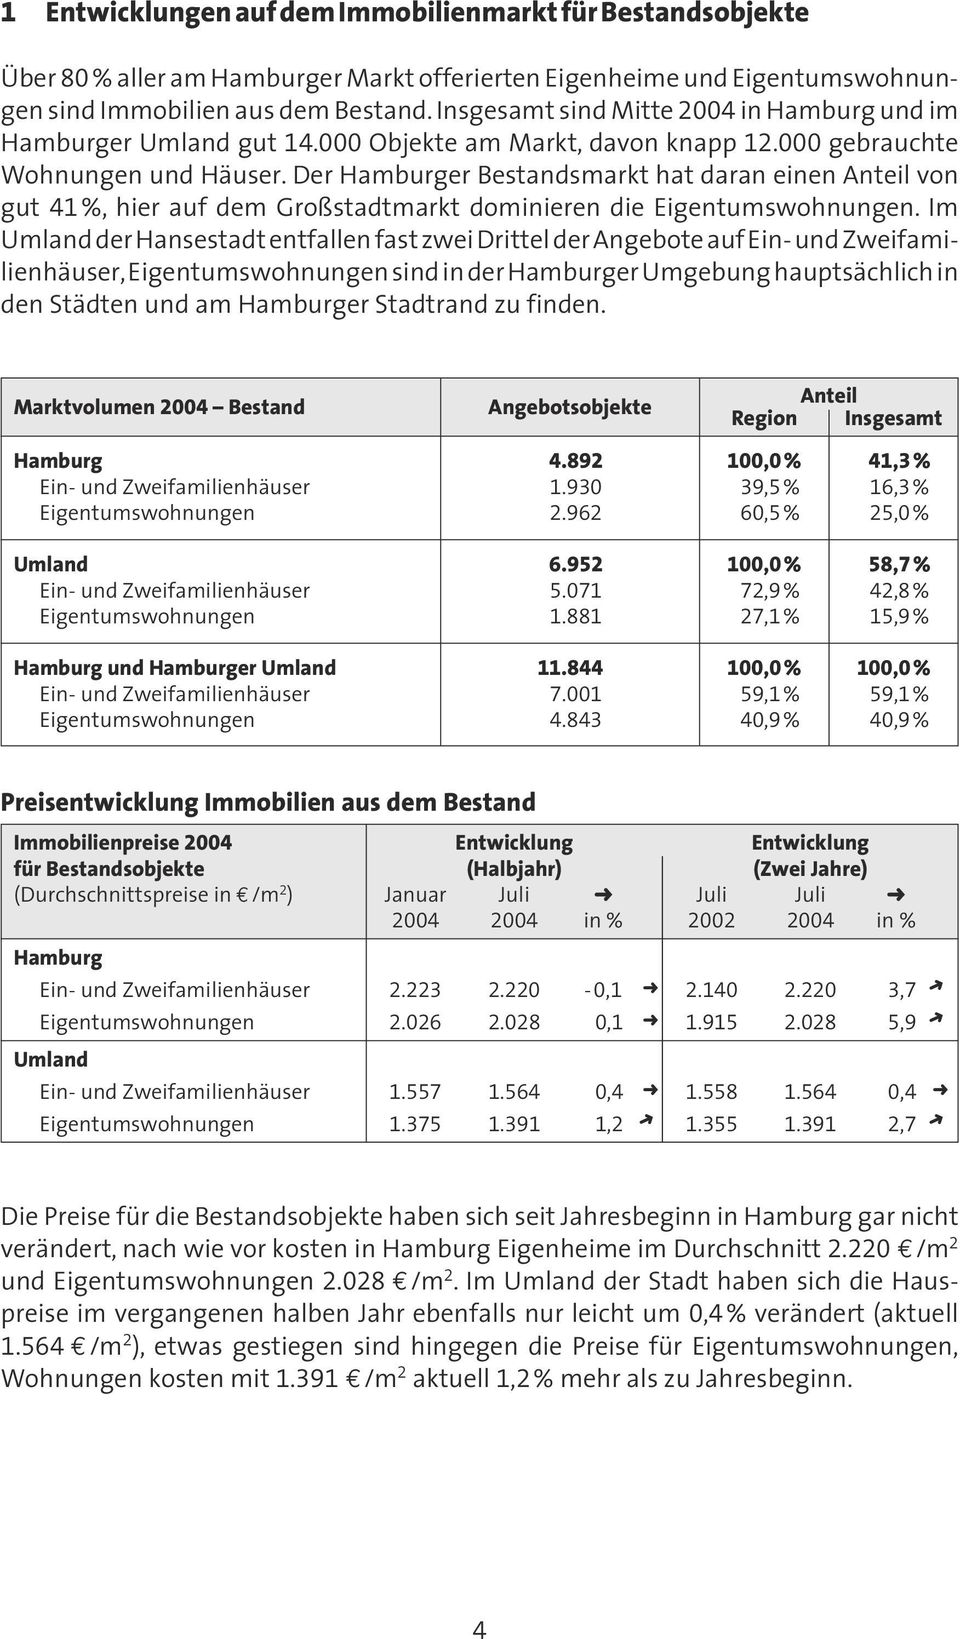 Der Hamburger Bestandsmarkt hat daran einen Anteil von gut 41%, hier auf dem Großstadtmarkt dominieren die Eigentumswohnungen.